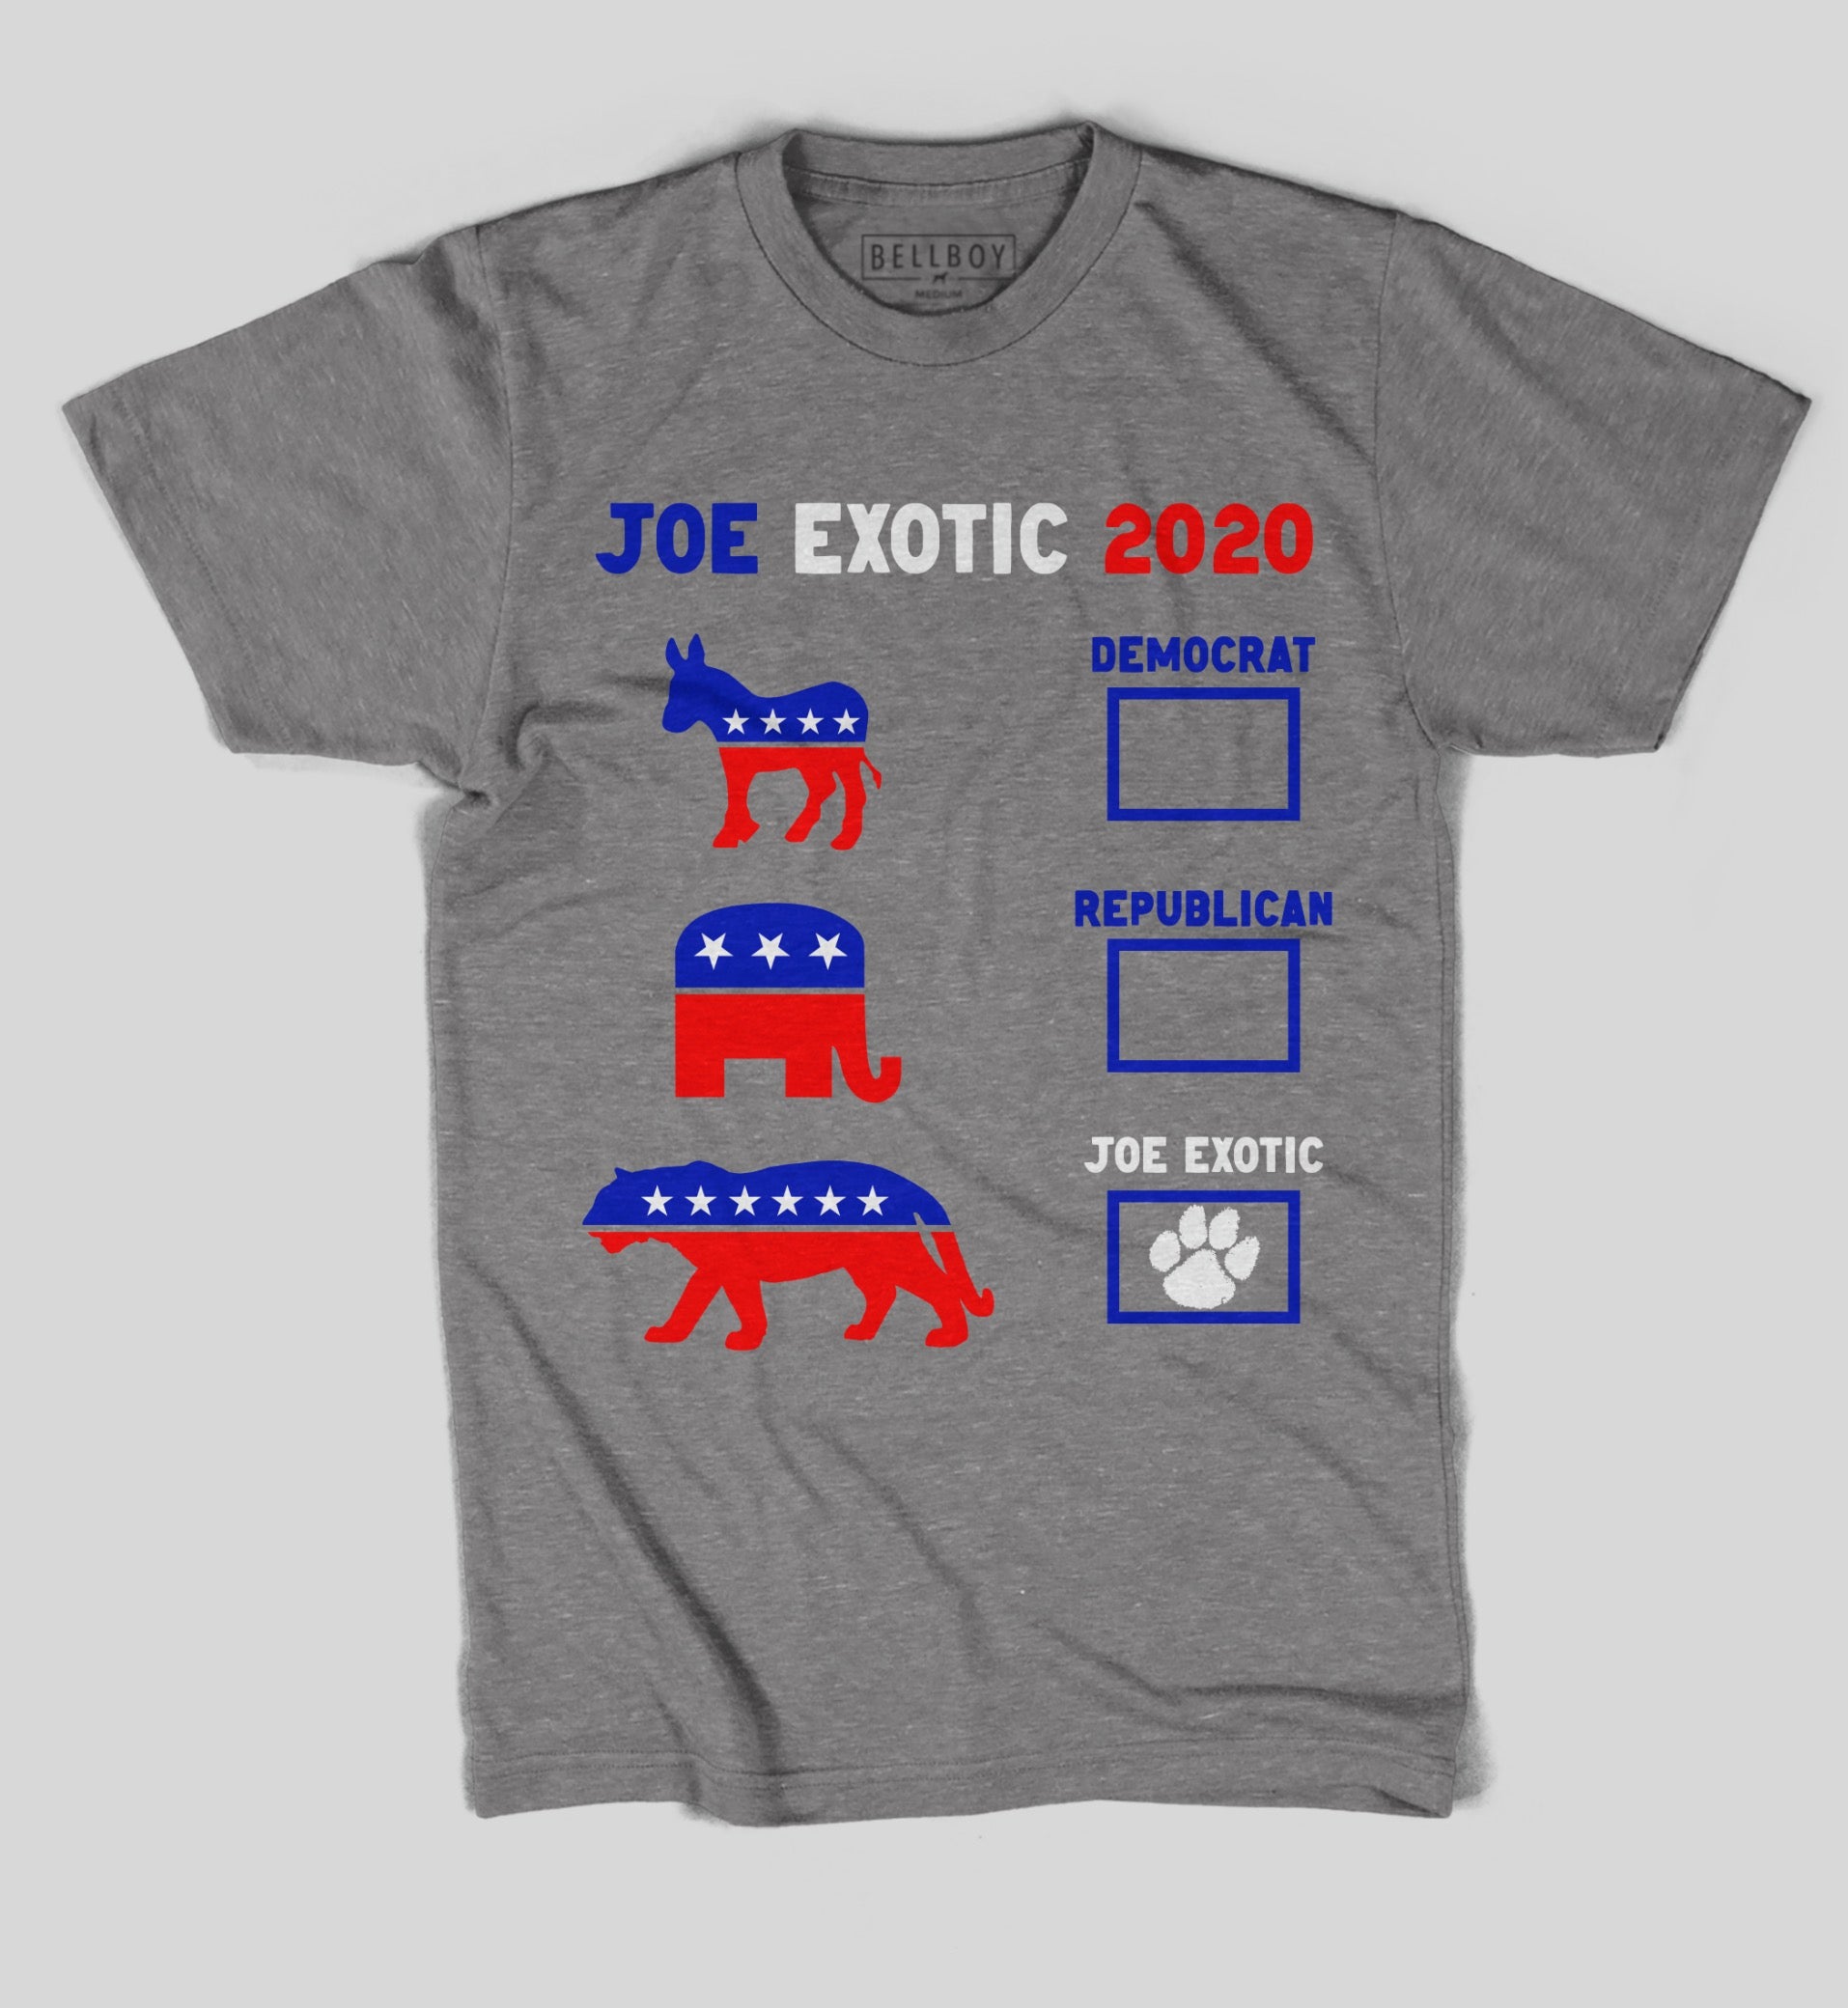 joe exptic shirt